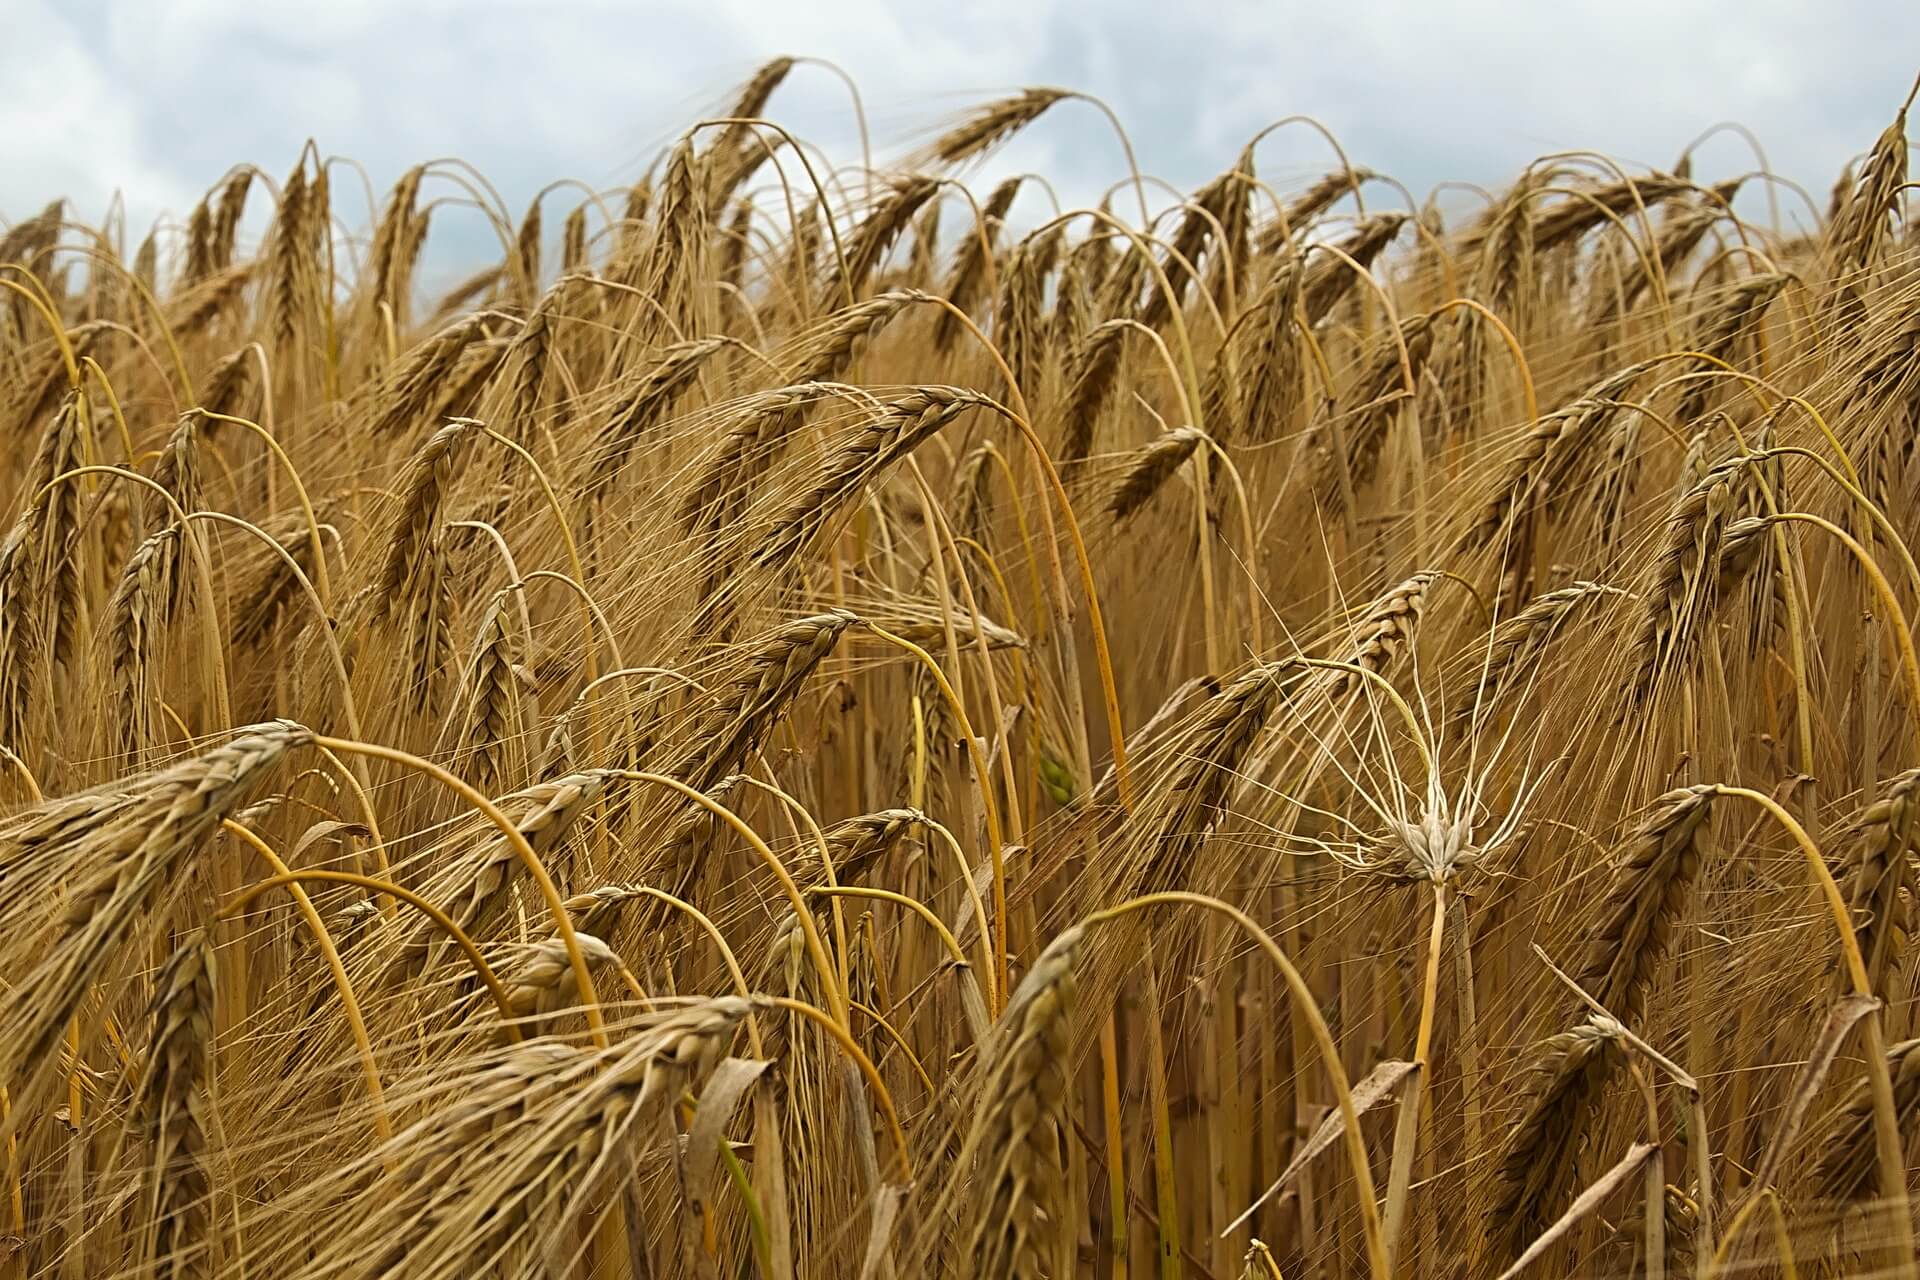 Ukrainian barley